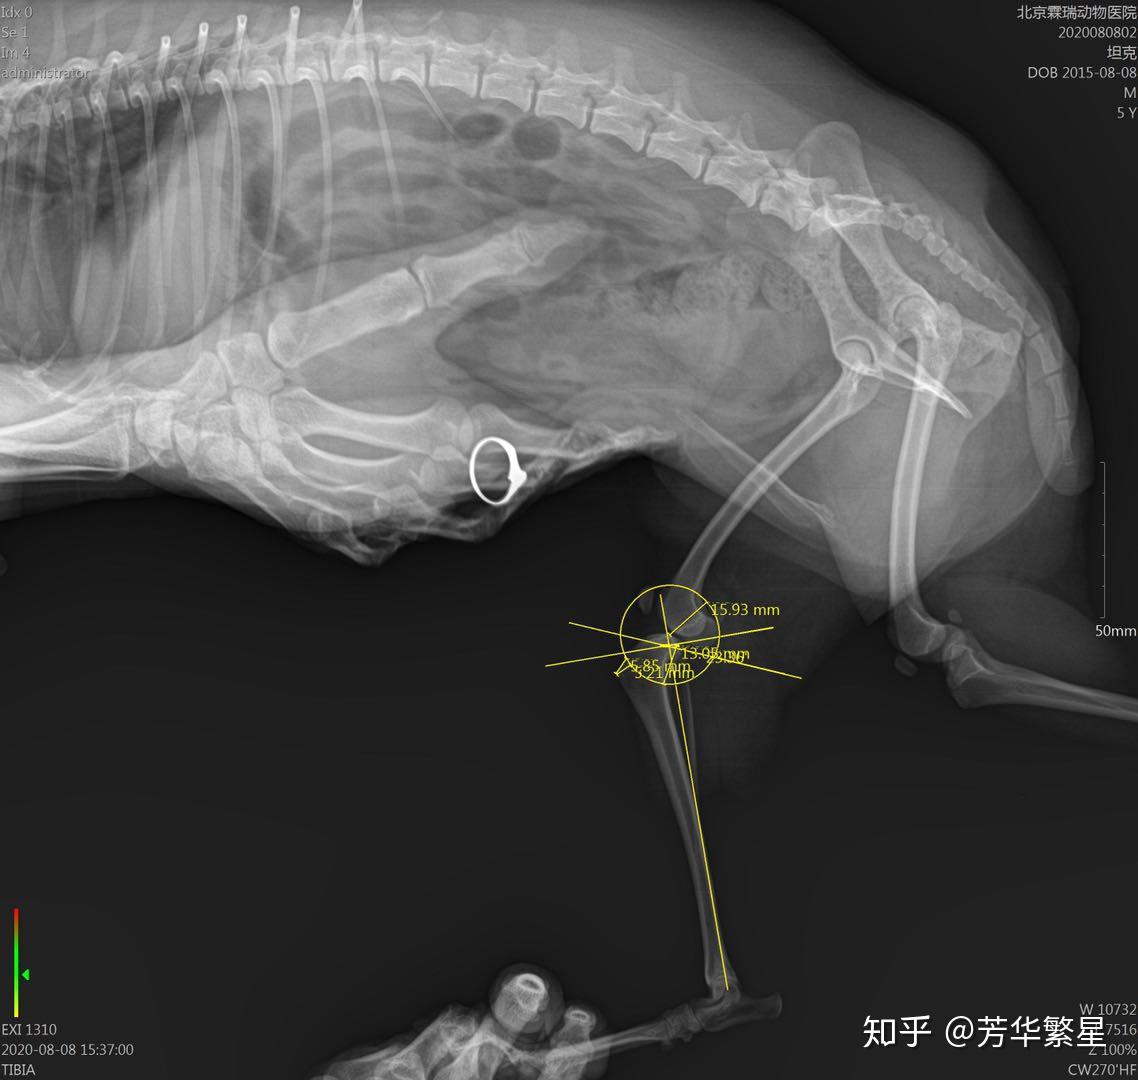 宠物泰迪犬十字韧带断裂及髌骨移位修复手术